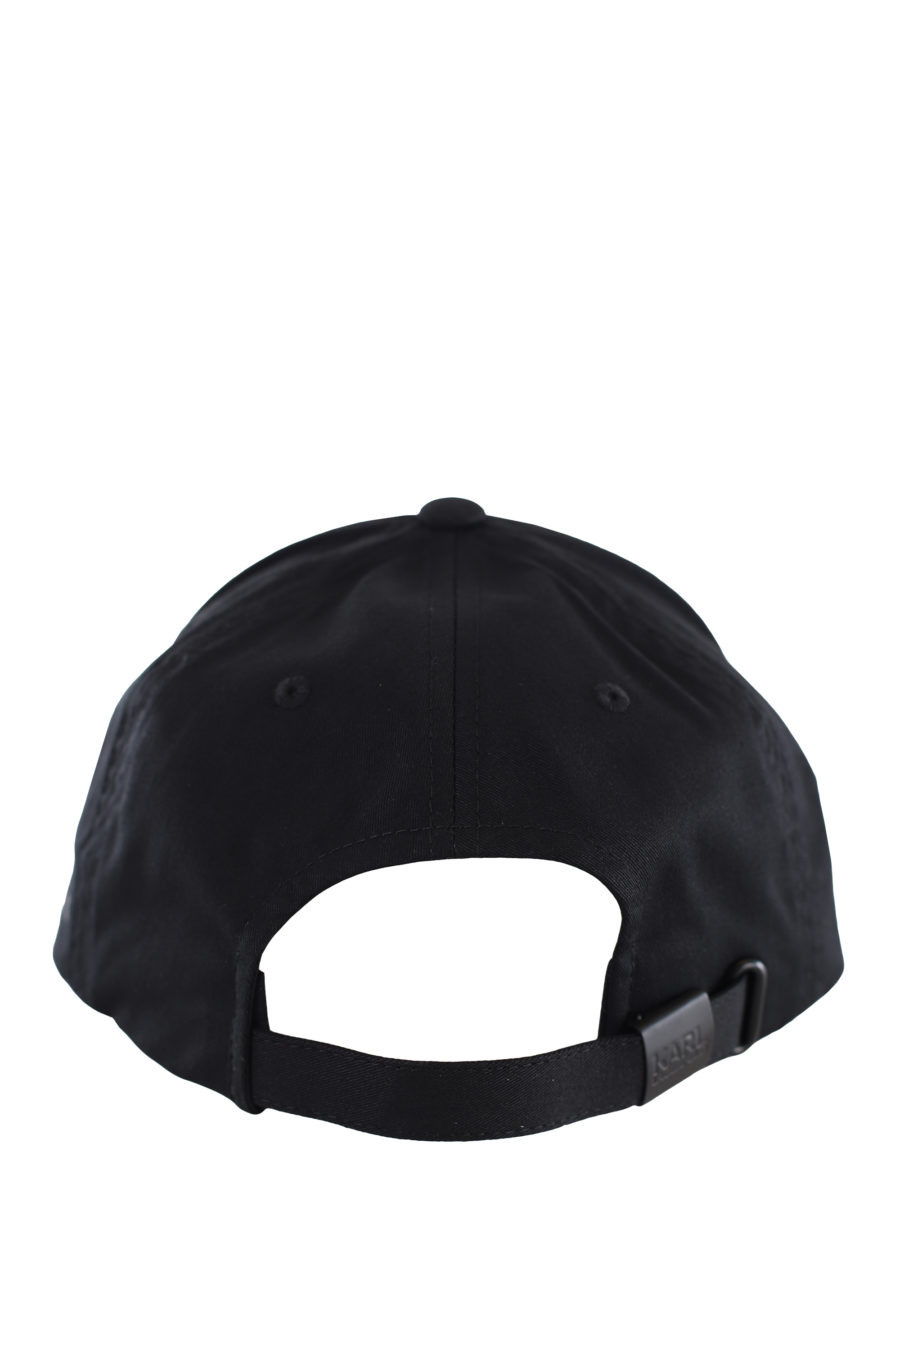 Gorra negra con logo pequeño plateado - IMG 1783